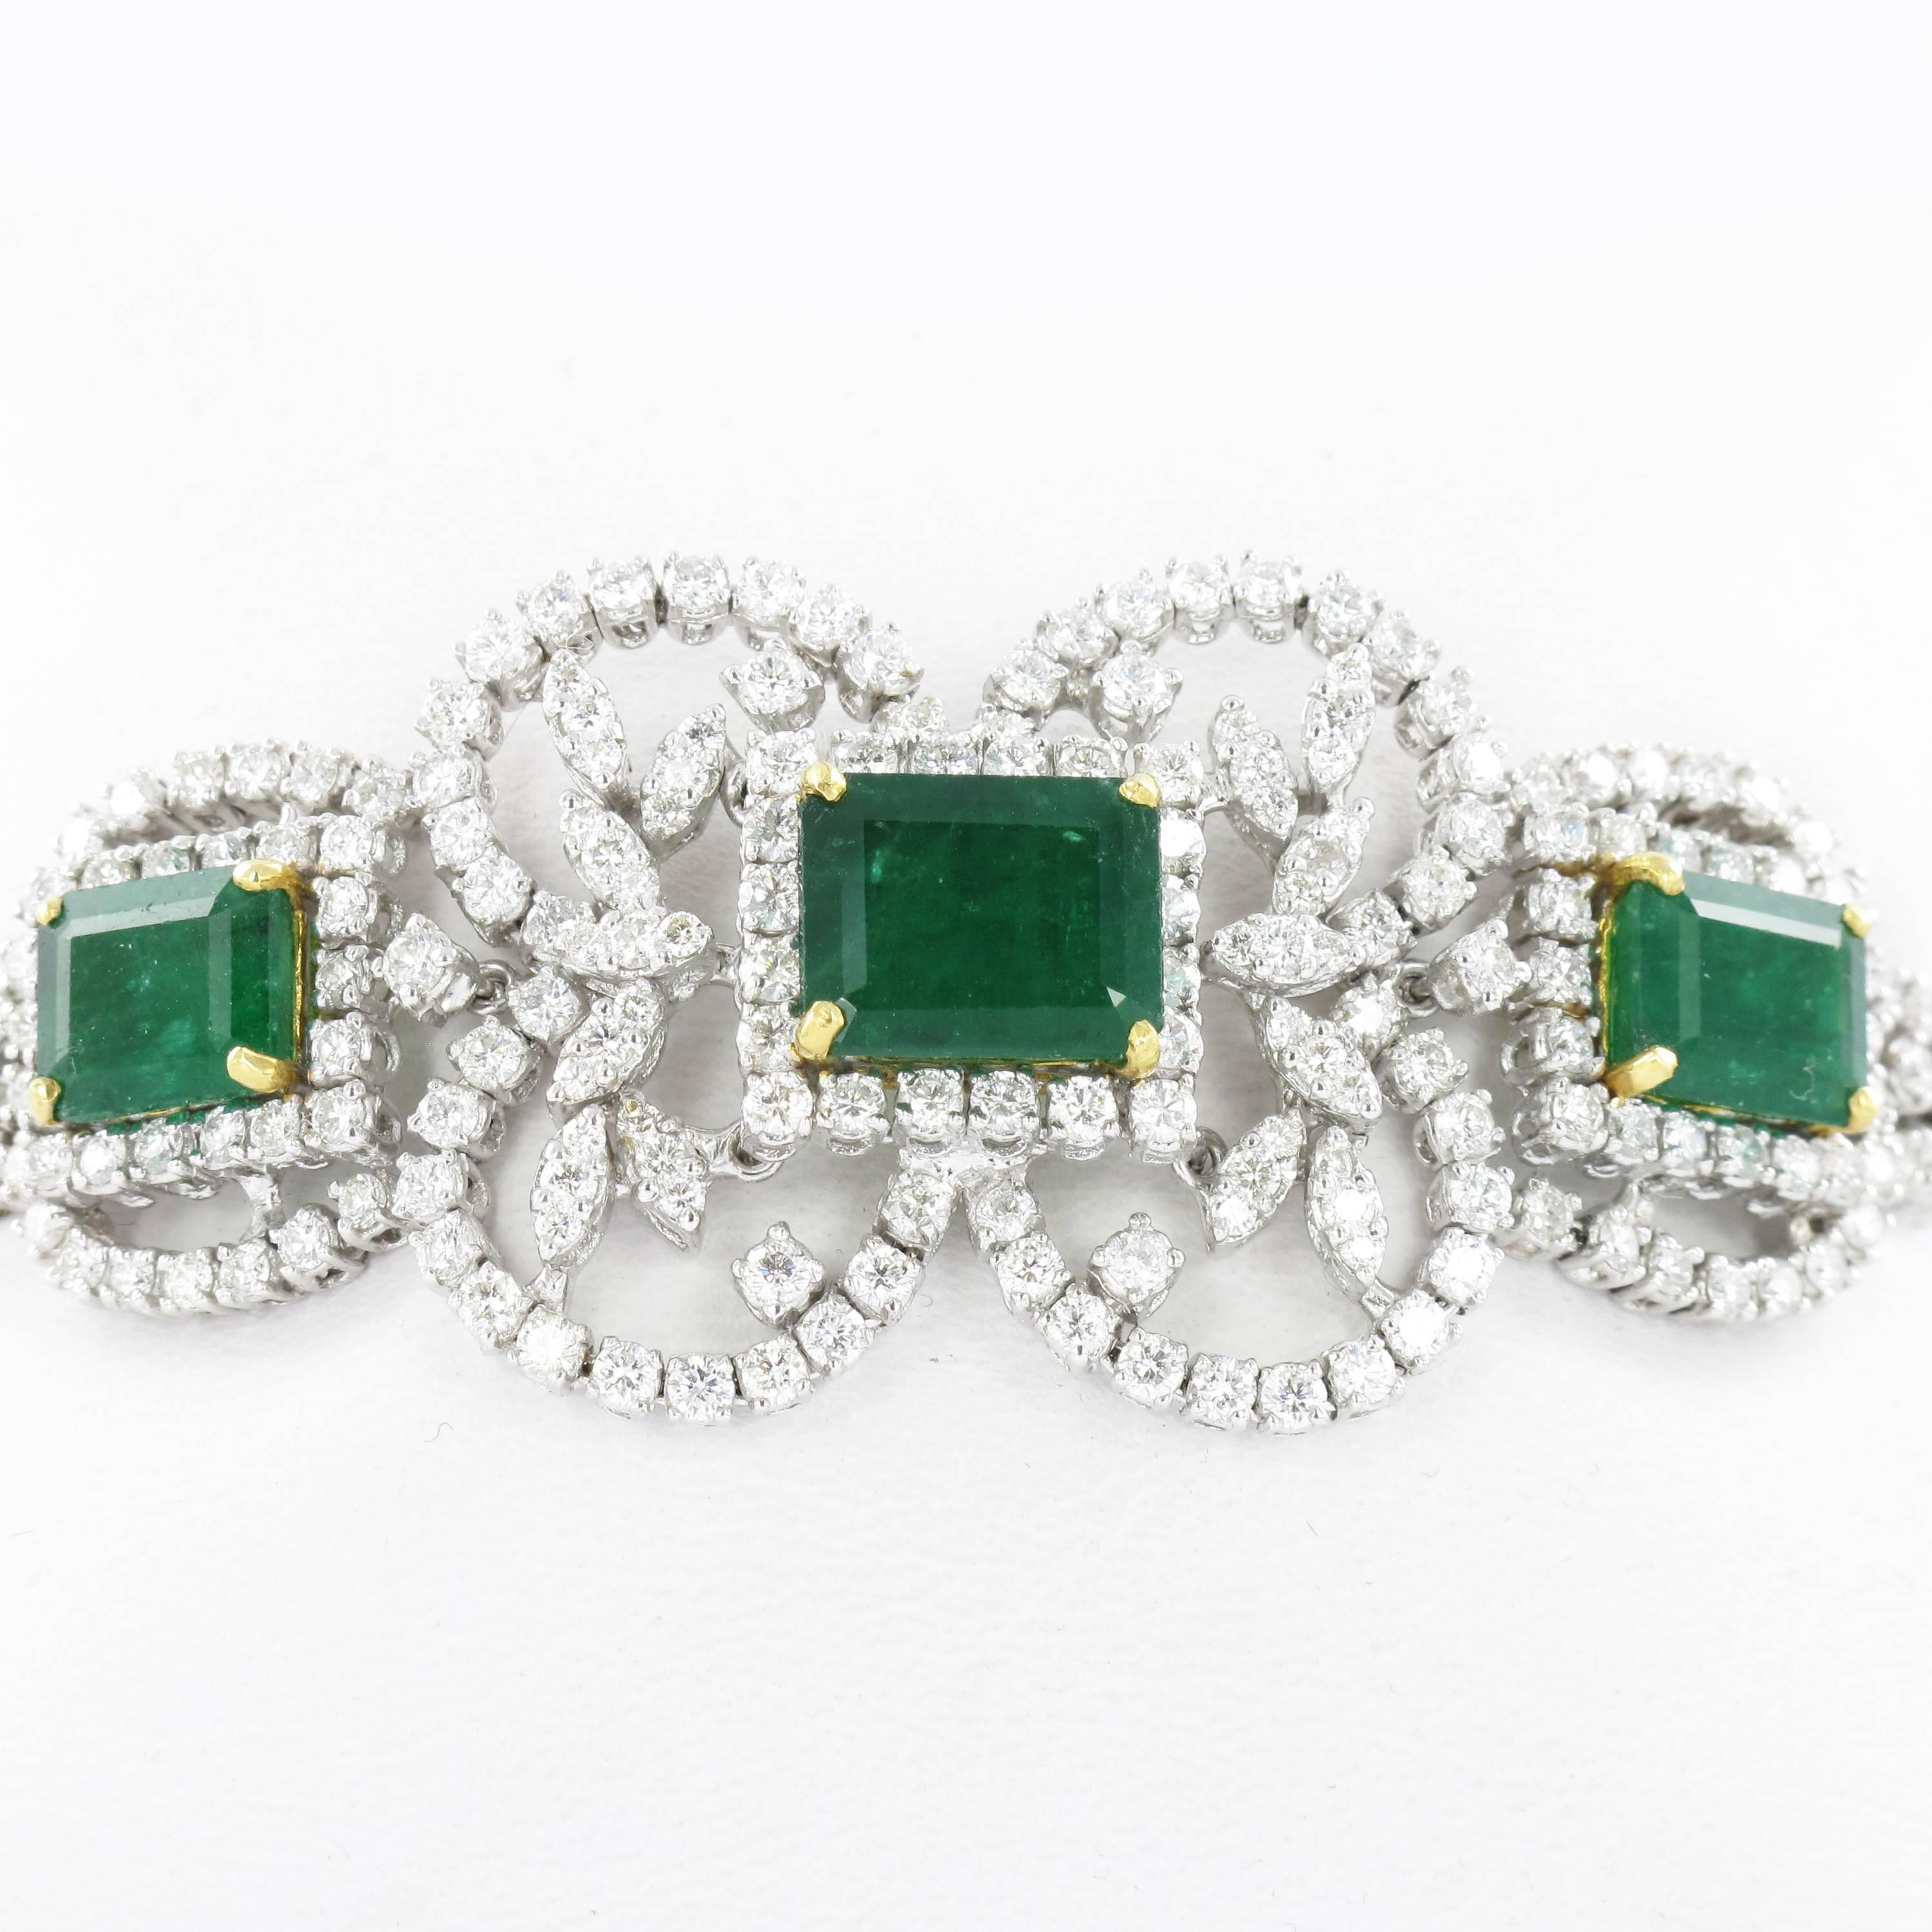 Impressive Emerald and Diamond Parure in White Gold 2